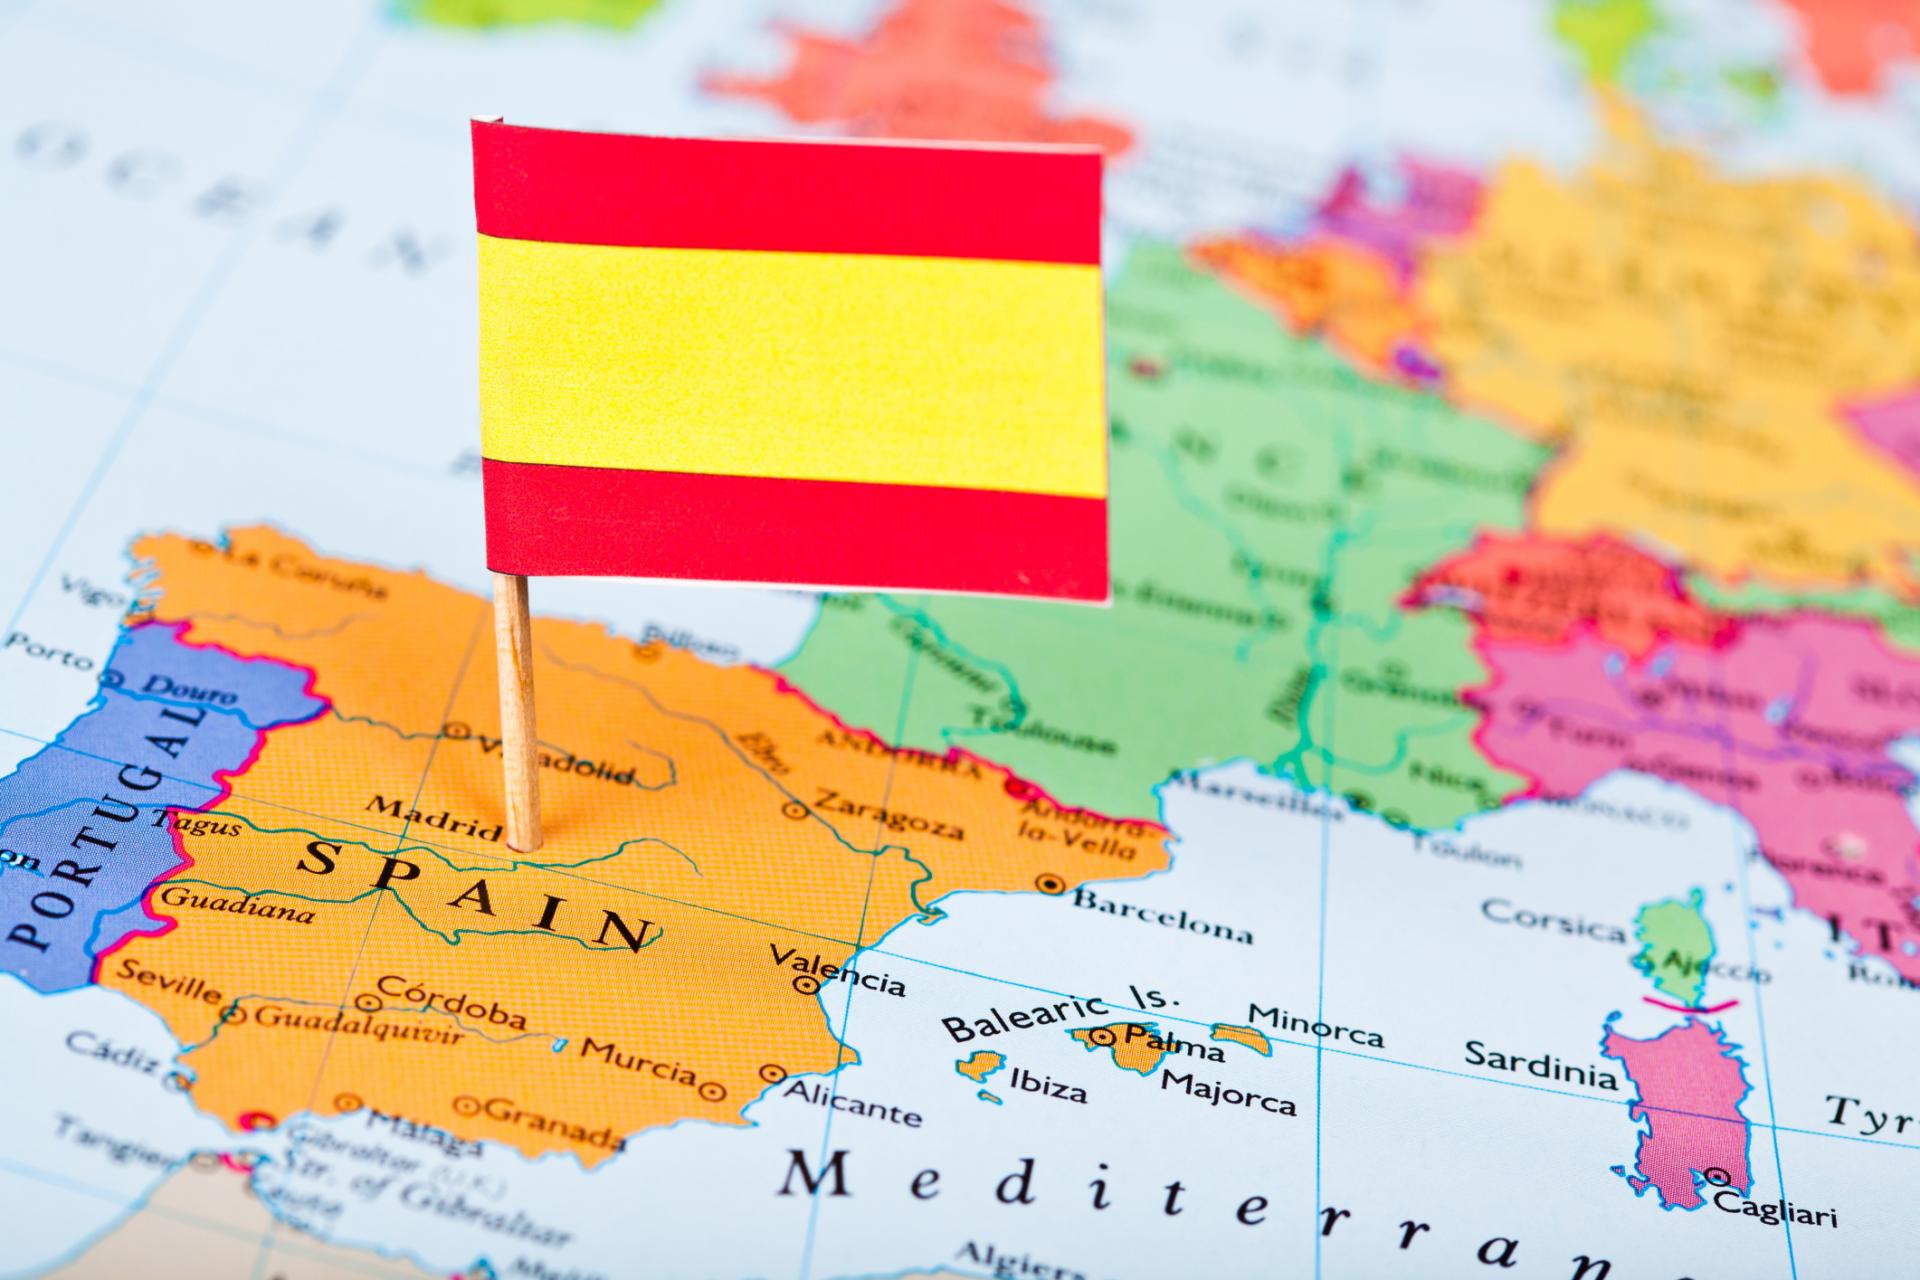 Документи на візу в Іспанію 2018 самостійно